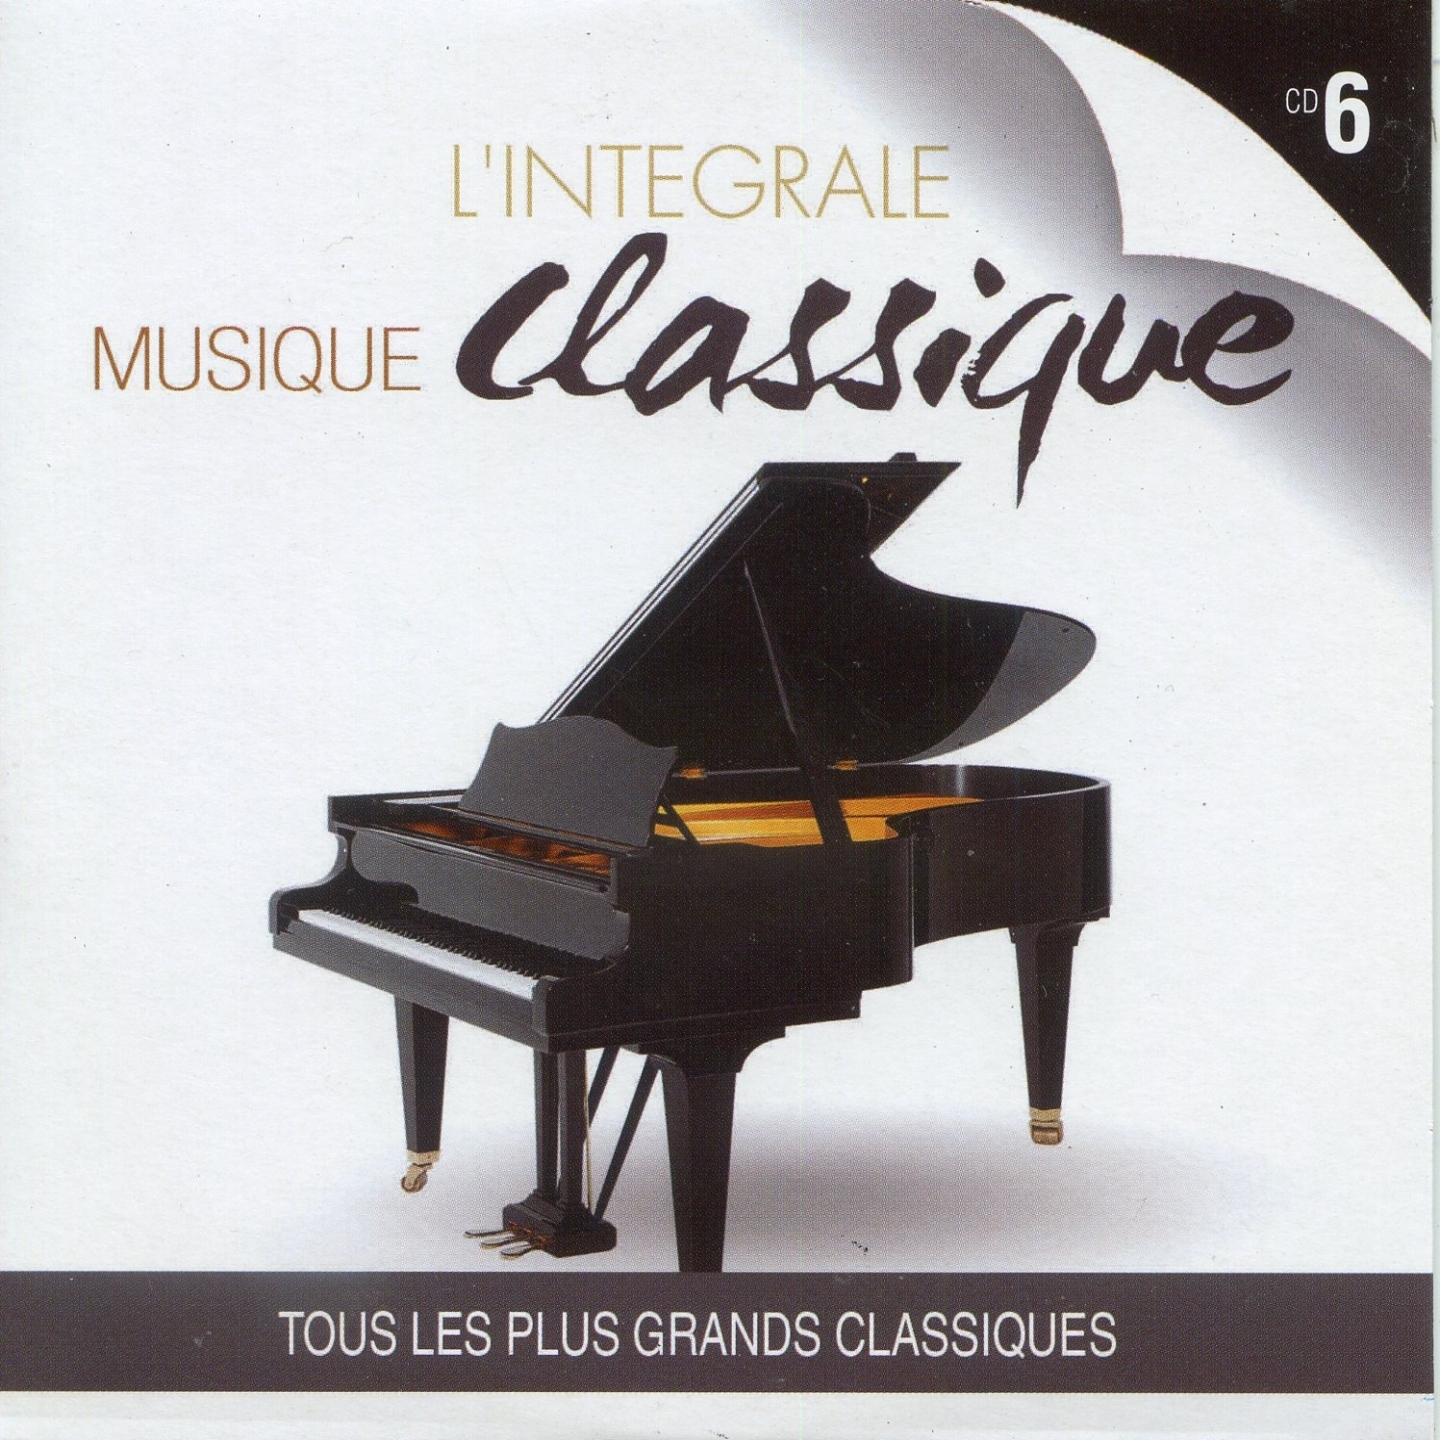 L' inte grale musique classique, vol. 6 Tous les plus grands classiques